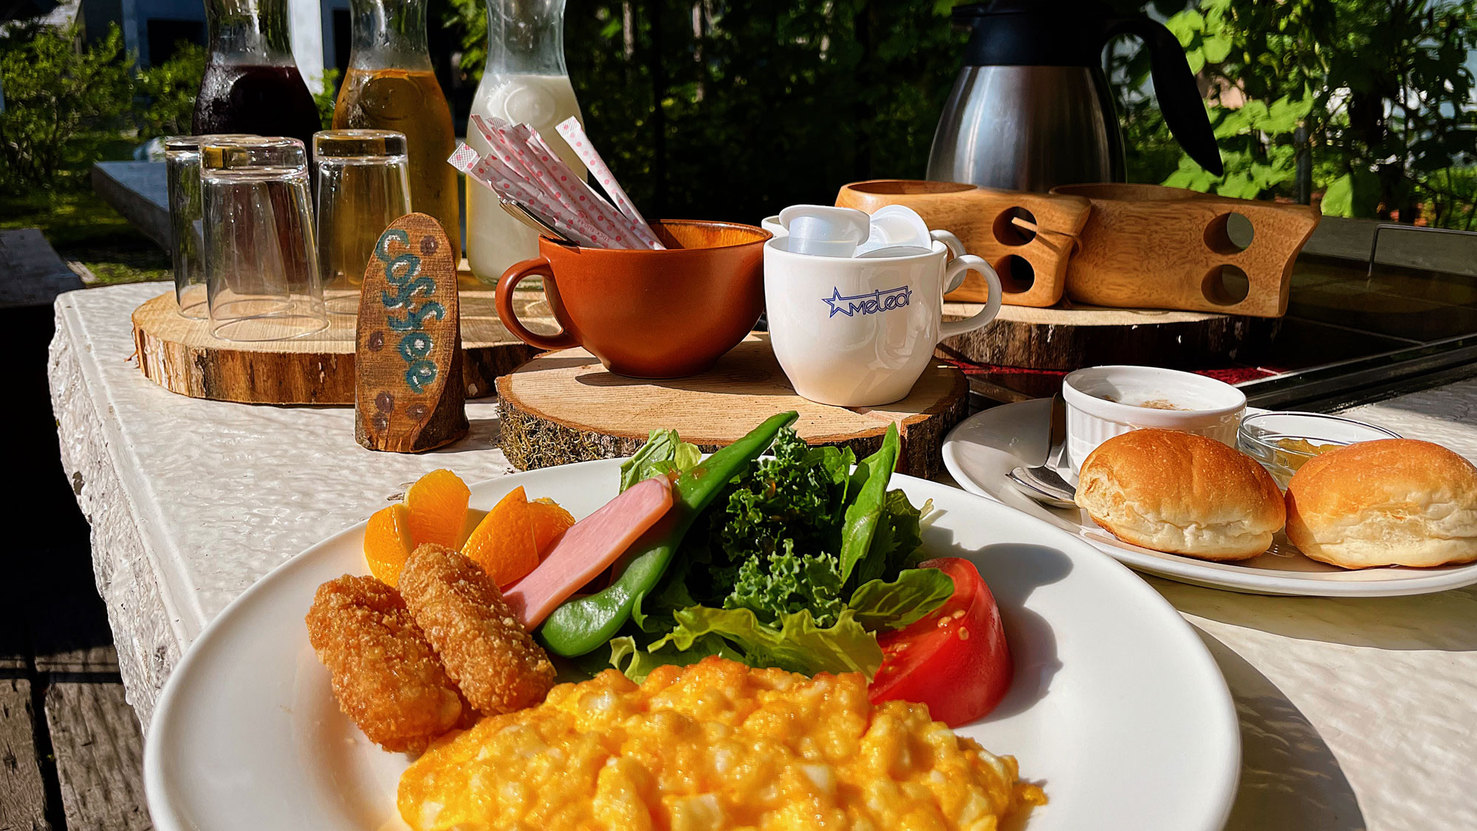 ガーデンテラスでおいしい朝食を♪ガーデンテラスでおいしい朝食を♪